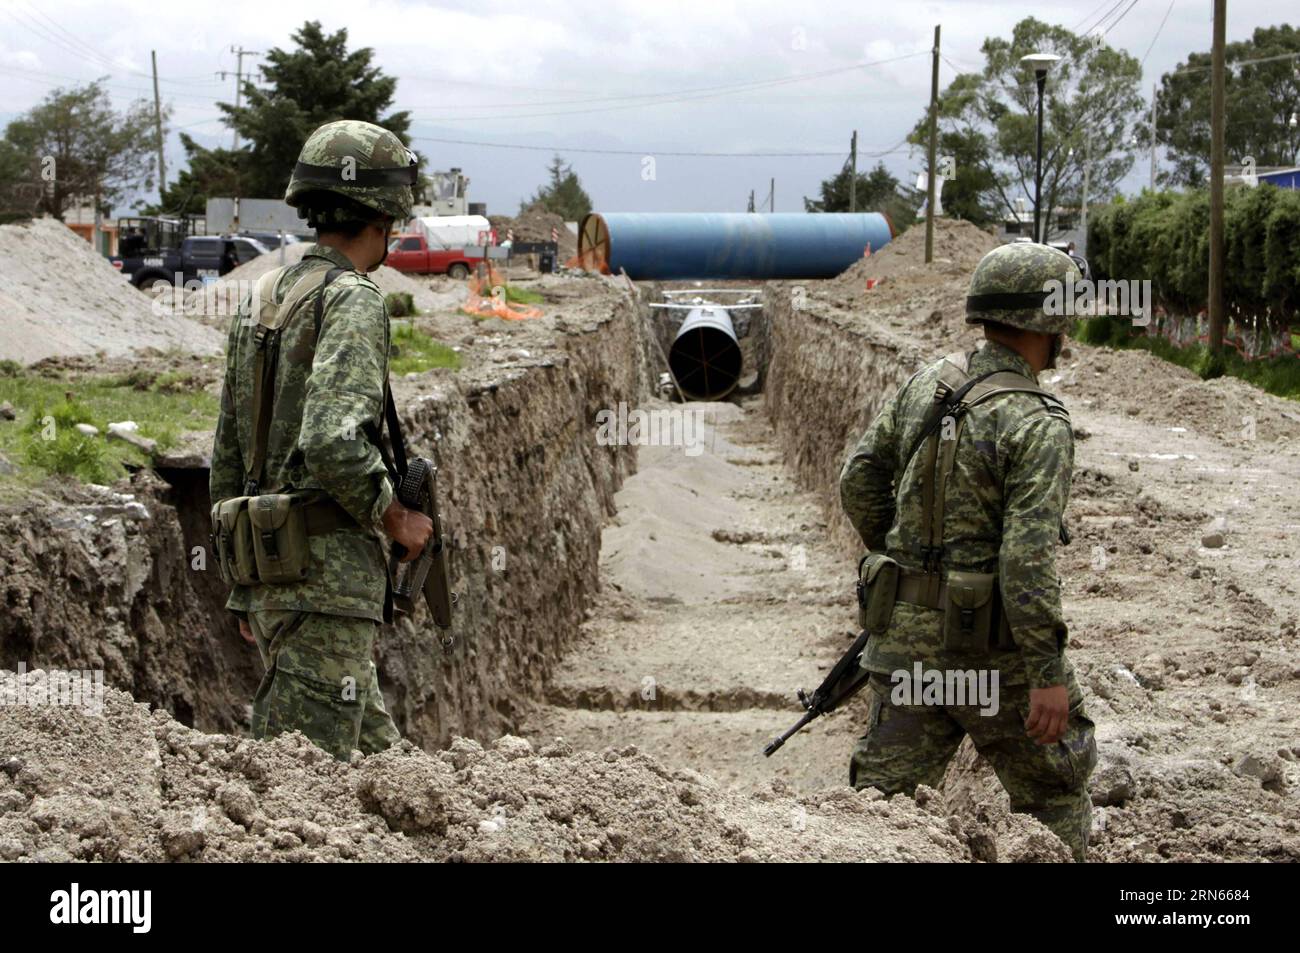 Des éléments de l armée mexicaine prennent part à une opération de sécurité dans les environs de la prison d Altiplano, après l évasion du roi du cartel de la drogue, Joaquin El Chapo Guzman, dans le canton d Almoloya de Juarez, État de Mexico, Mexique, le 12 juillet 2015. Joaquin El Chapo Guzman, le roi du cartel de la drogue du Mexique, s'est évadé de prison par un tunnel de 1,5 km sous sa cellule, ont déclaré dimanche les autorités. (jp) MEXICO-ALMOLOYA DE JUAREZ-SECURITY-GUZMAN LOERA JairxCabrera PUBLICATIONxNOTxINxCHN un élément de l'armée MEXICAINE participe à une opération de sécurité à proximité de la prison d'Altiplano après mon évasion Banque D'Images